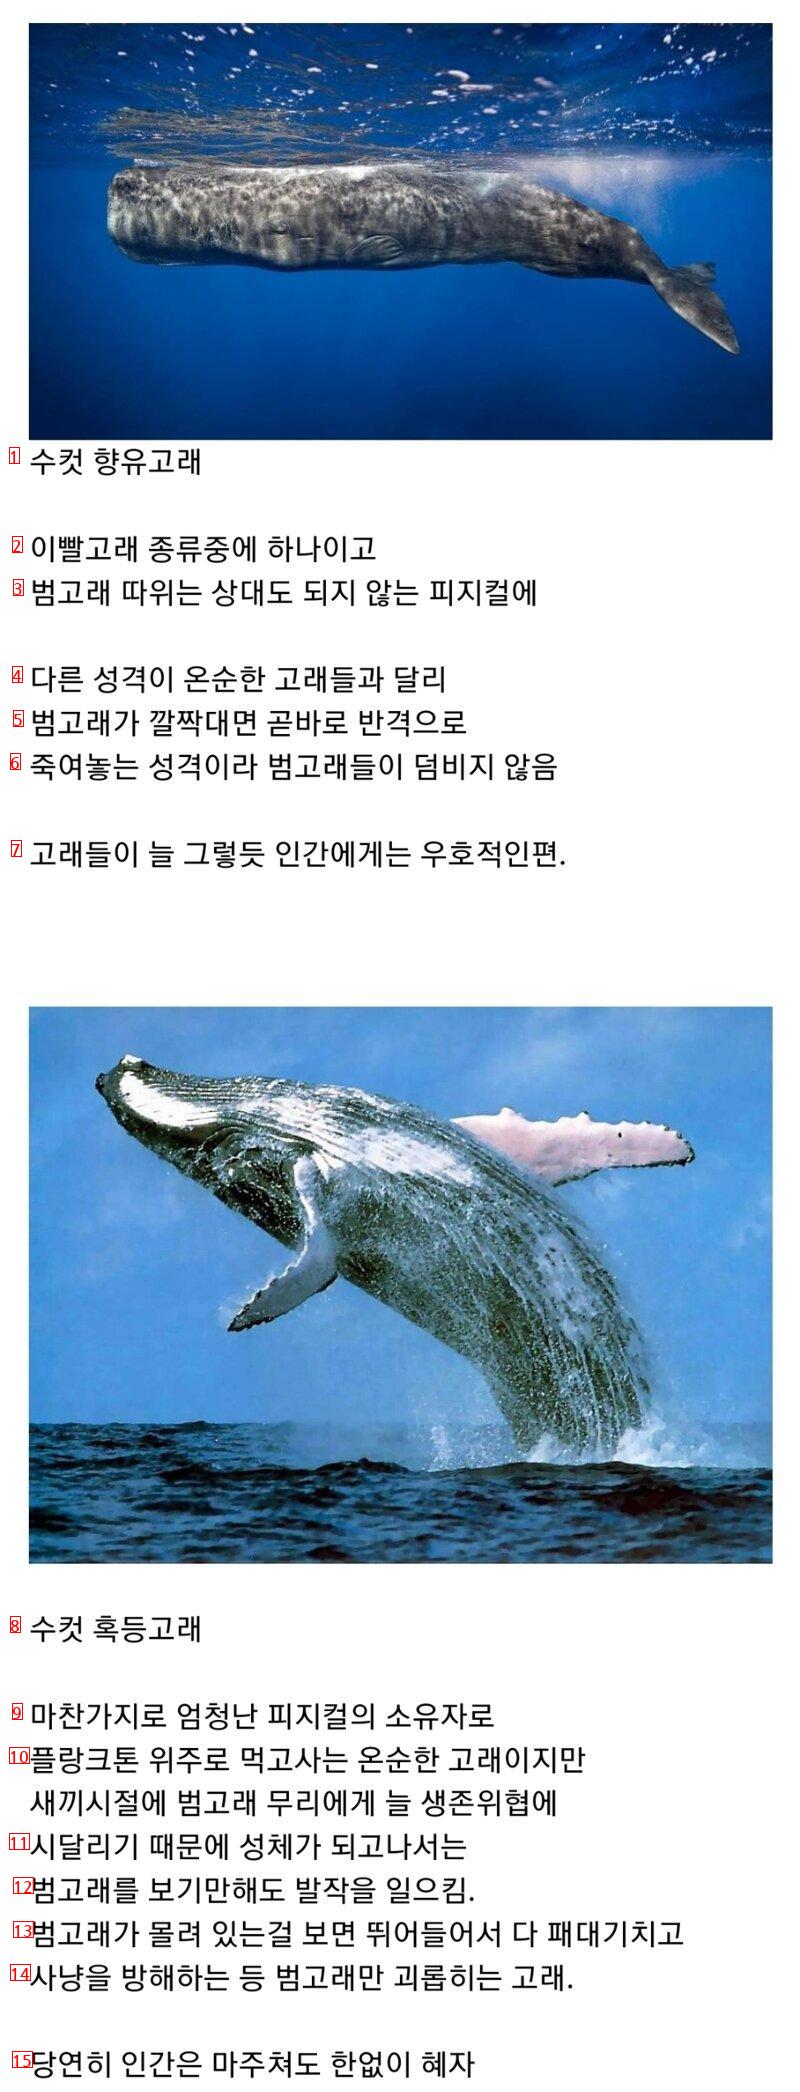 범고래 담당 일진